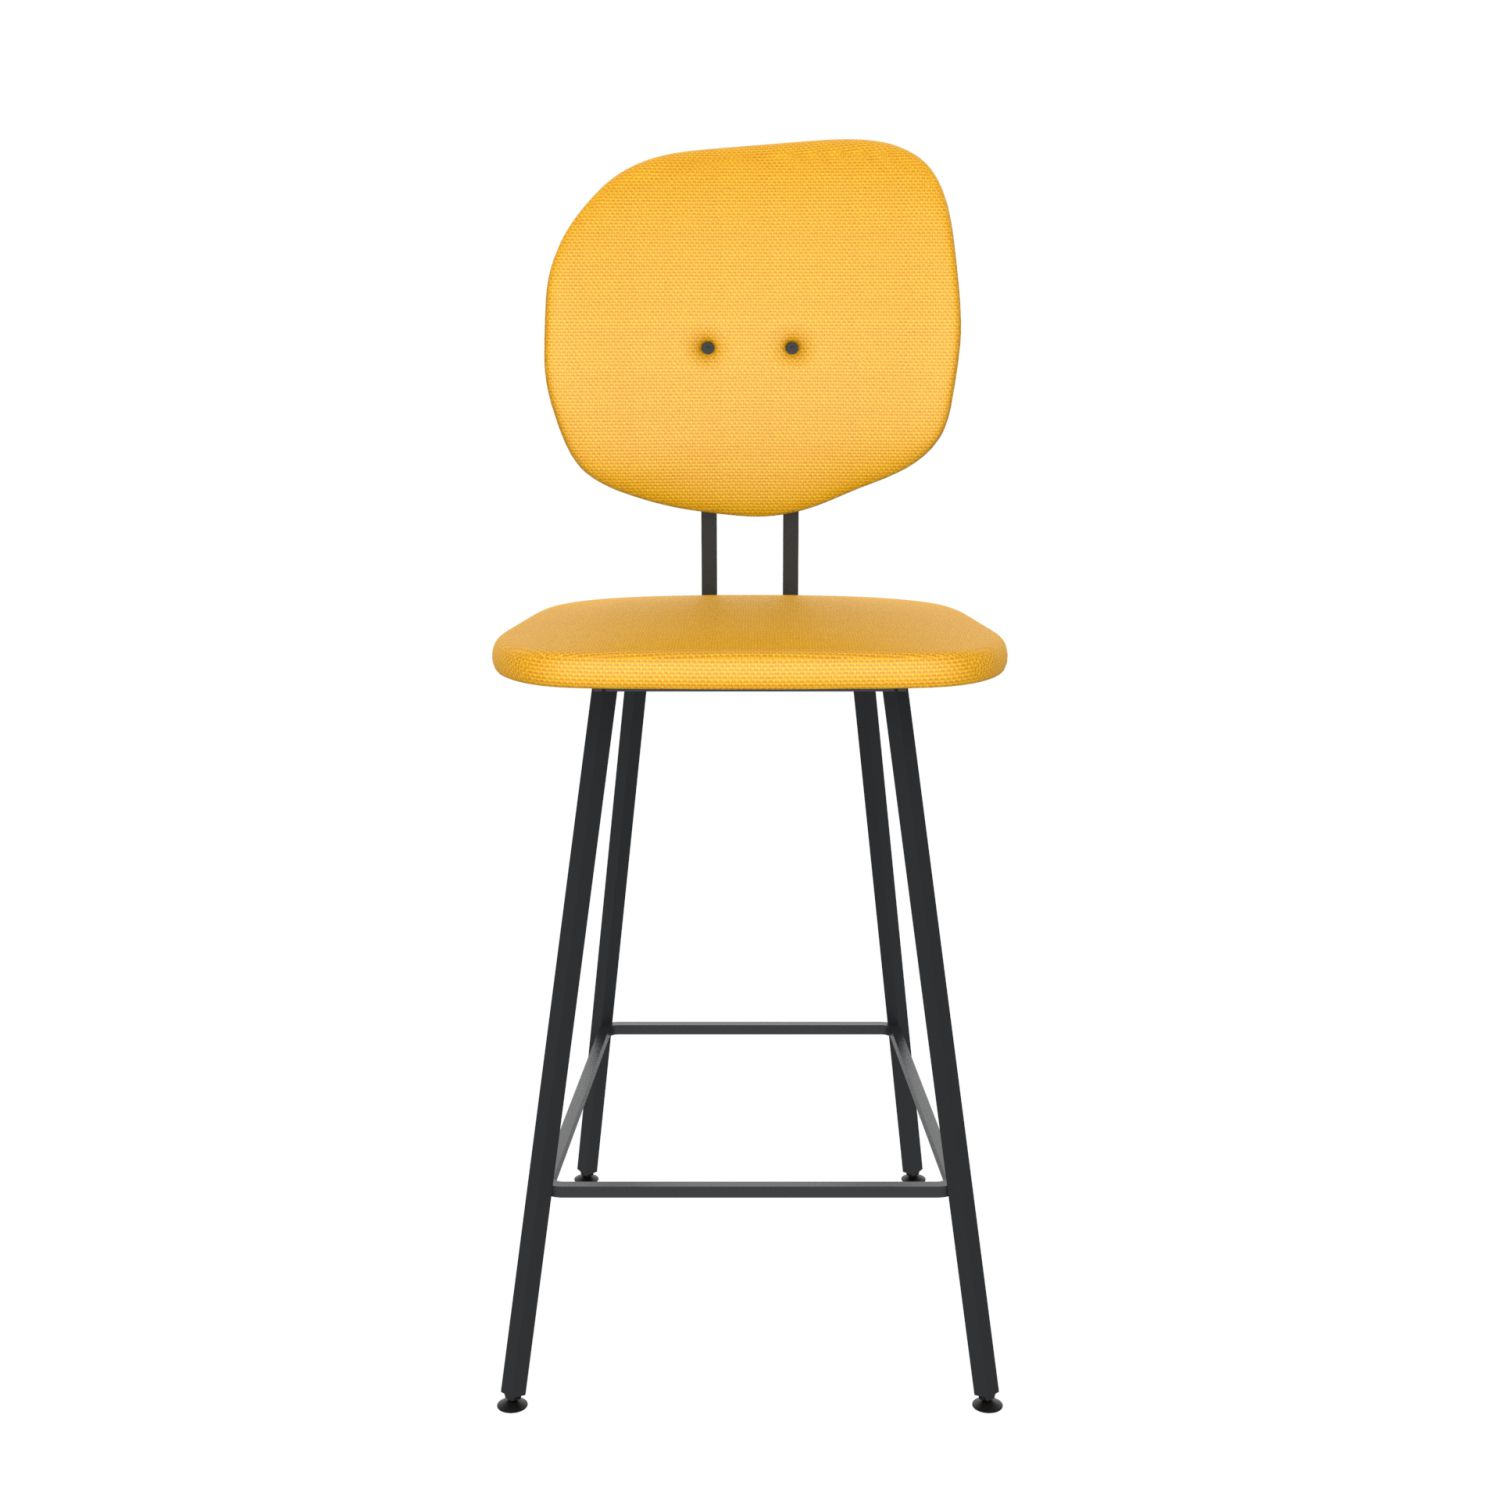 maarten baas barstool 65 cm without armrests backrest h lemon yellow 051 frame black